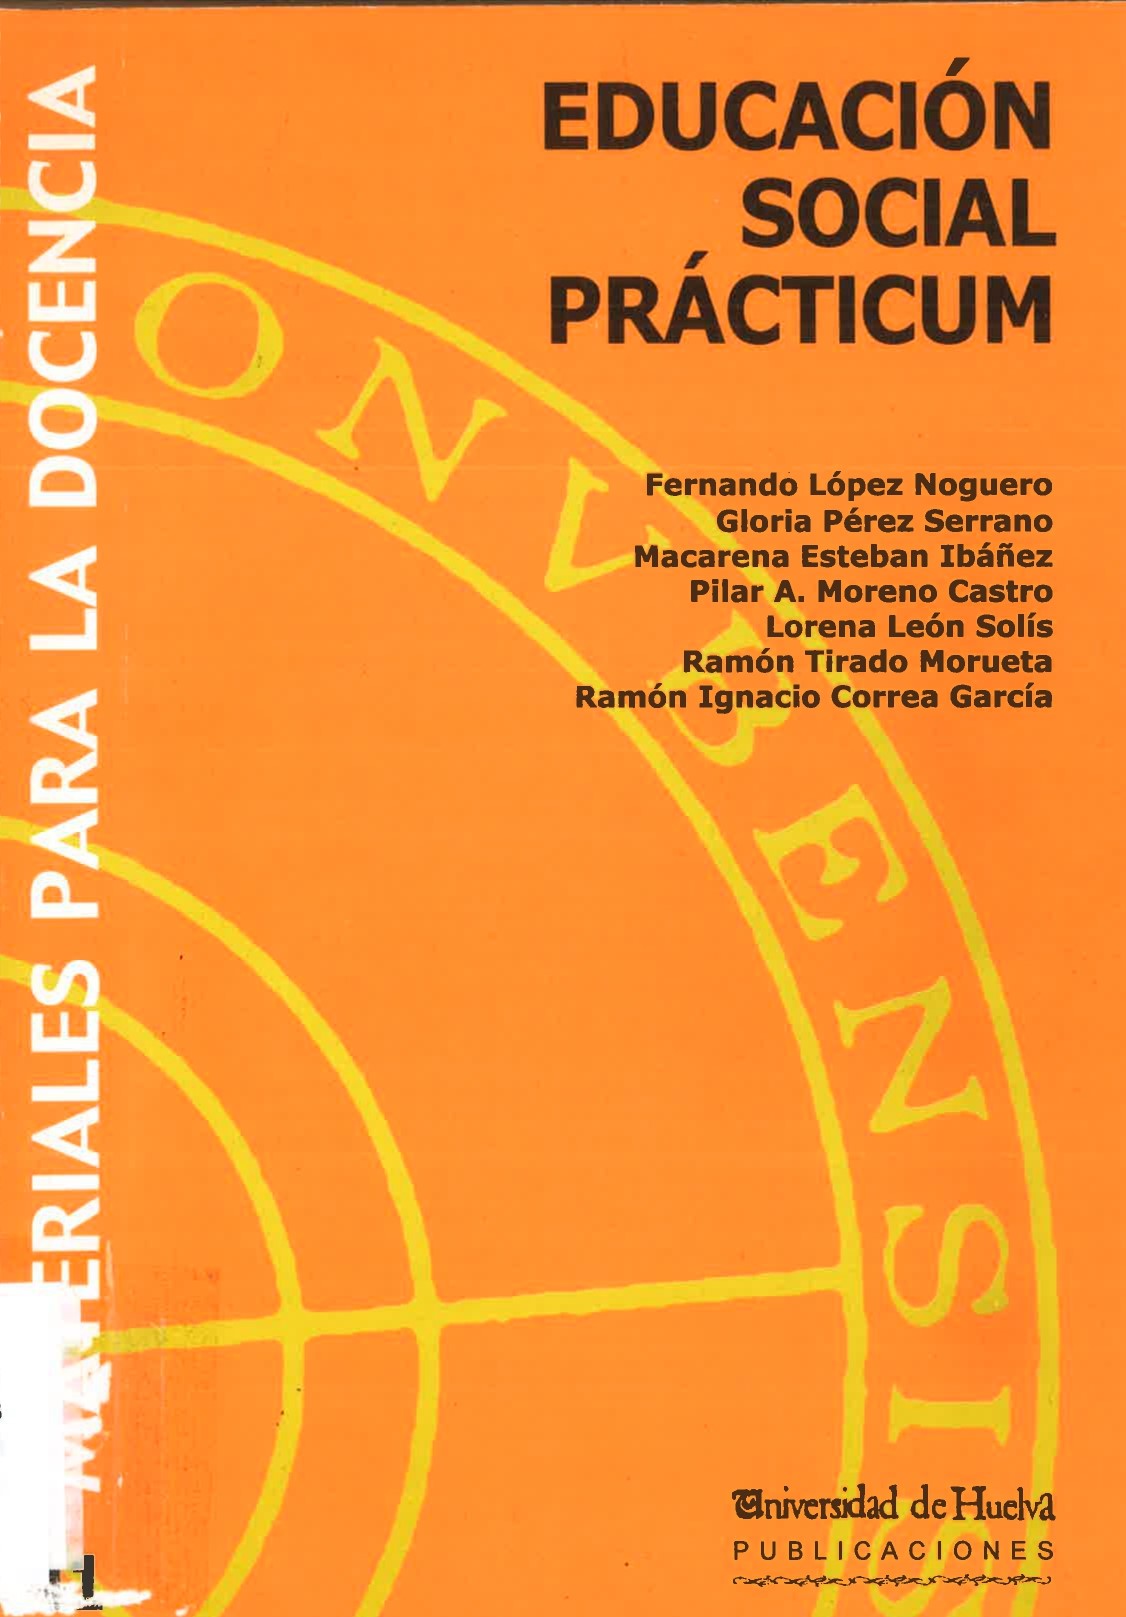 Imagen de portada del libro Educación Social Prácticum.